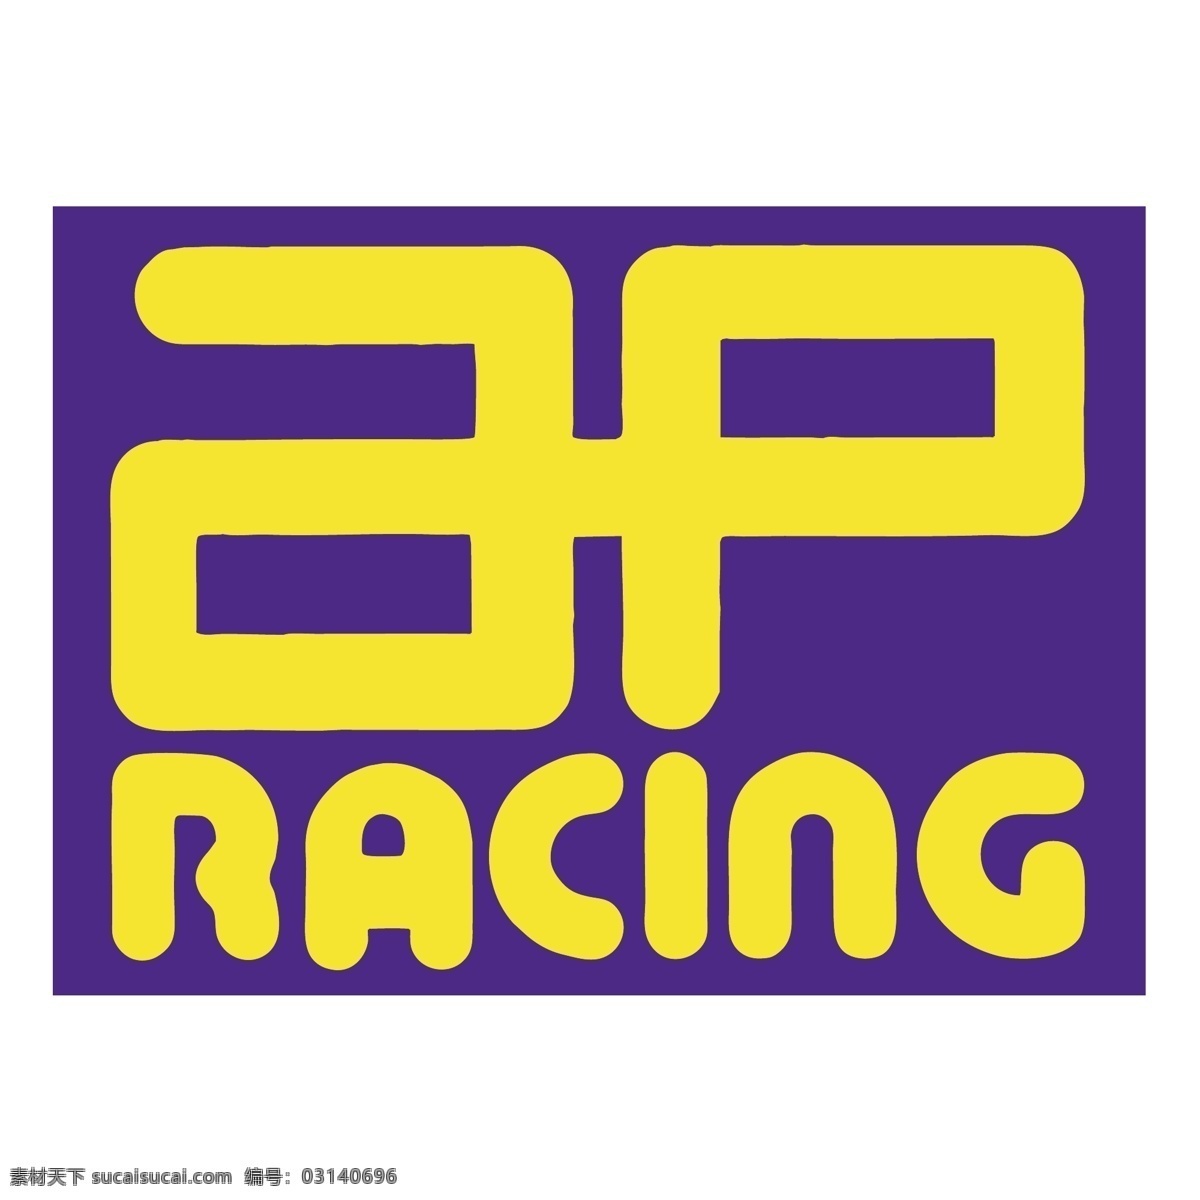 美联社 赛车 免费 ap 标识 psd源文件 logo设计